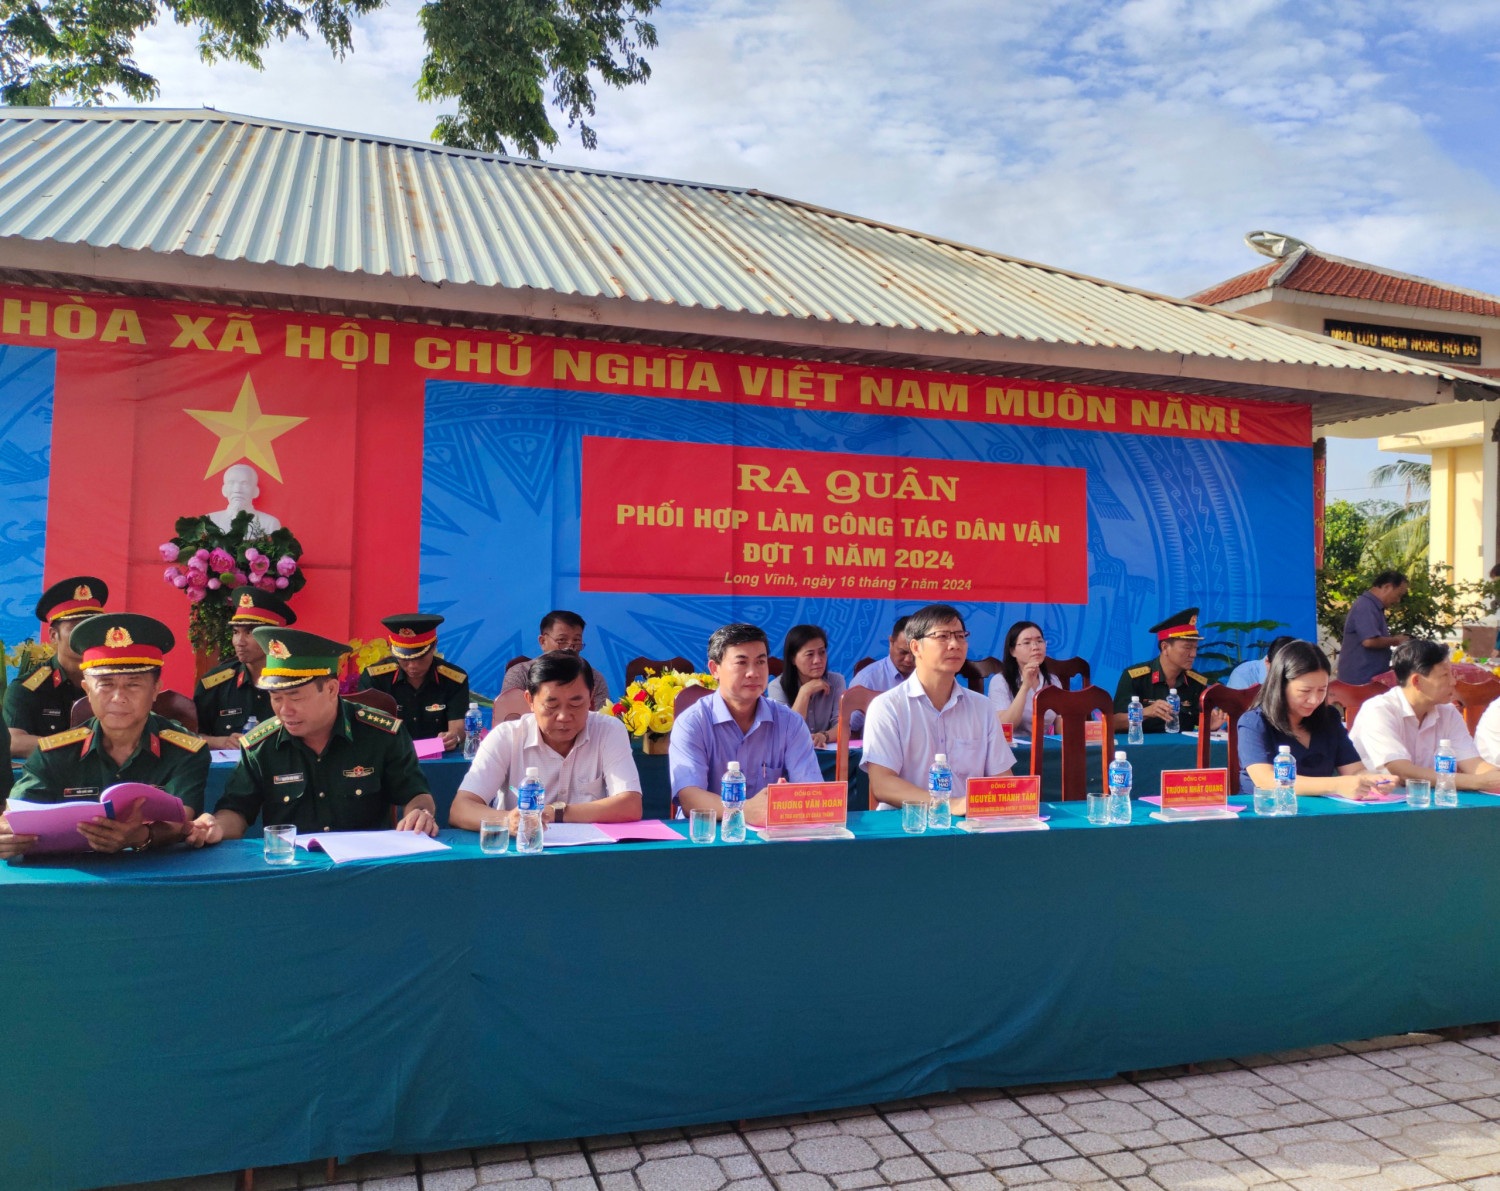 Bí thư Tỉnh ủy, Chủ tịch HĐND tỉnh Nguyễn Thành Tâm dự lễ ra quân công tác dân vận tại Châu Thành